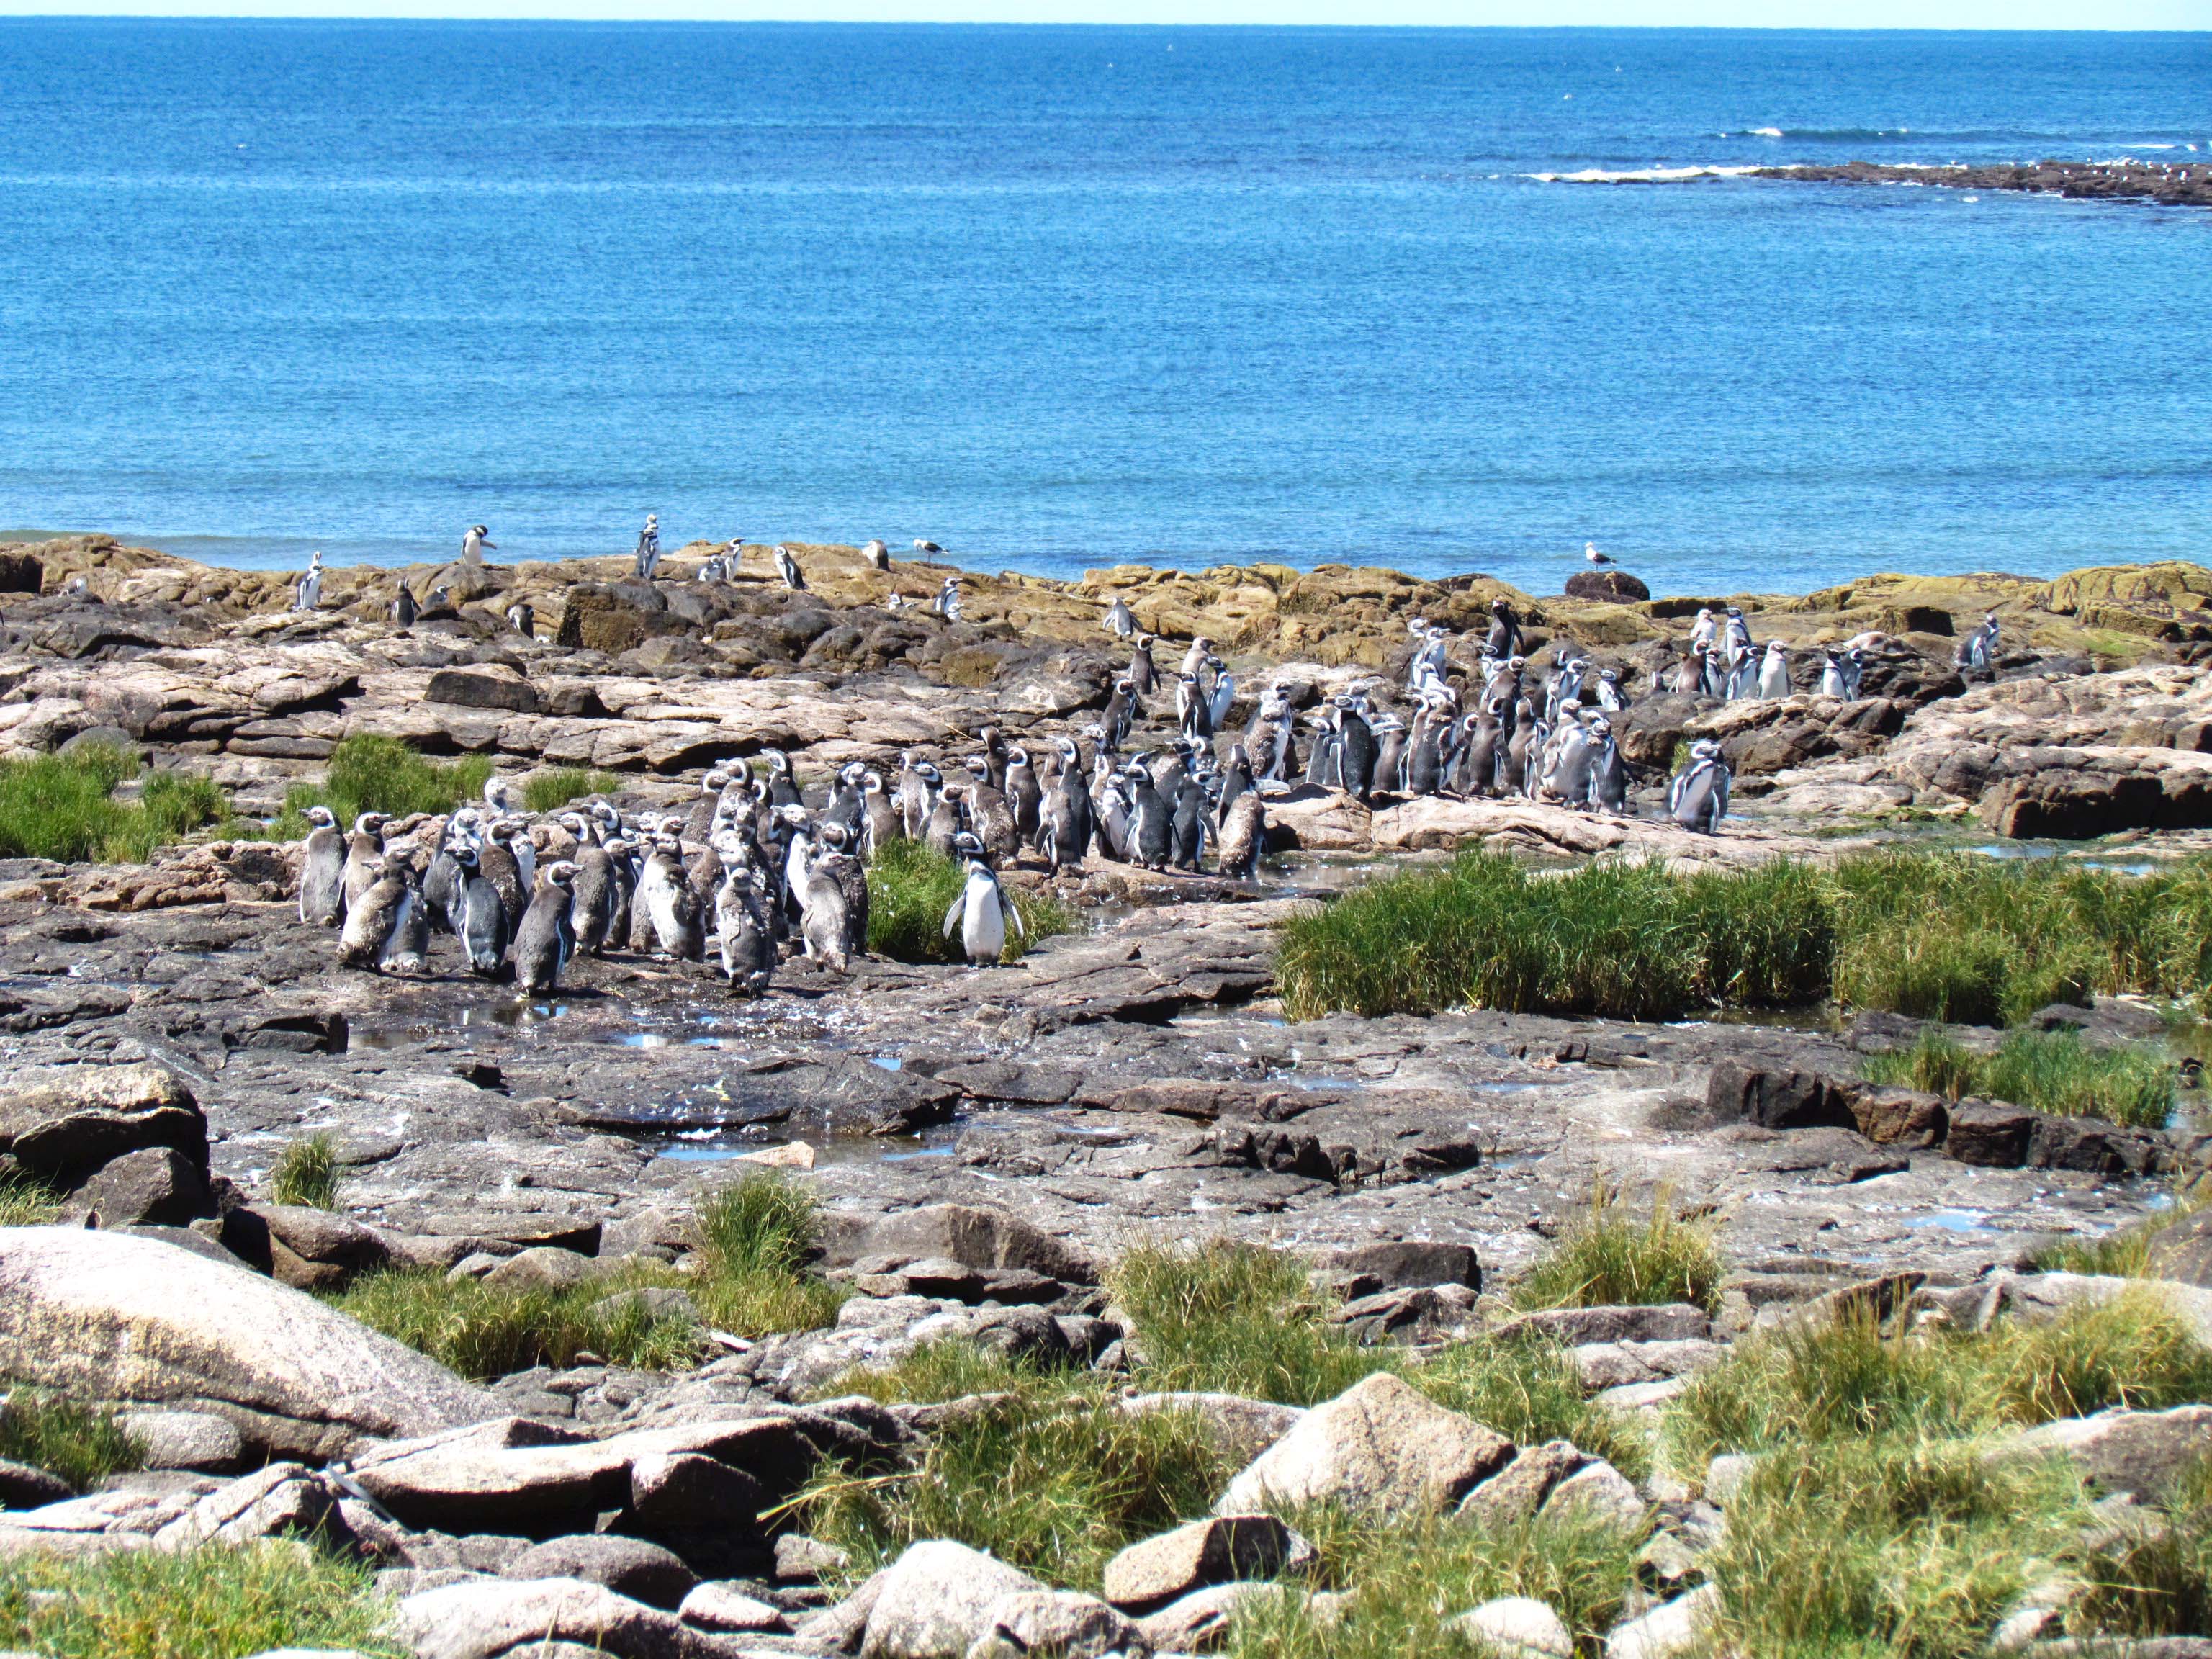 En el futuro parque nacional reside una colonia de pingüinos de Magallanes. Foto: Islote Lobos